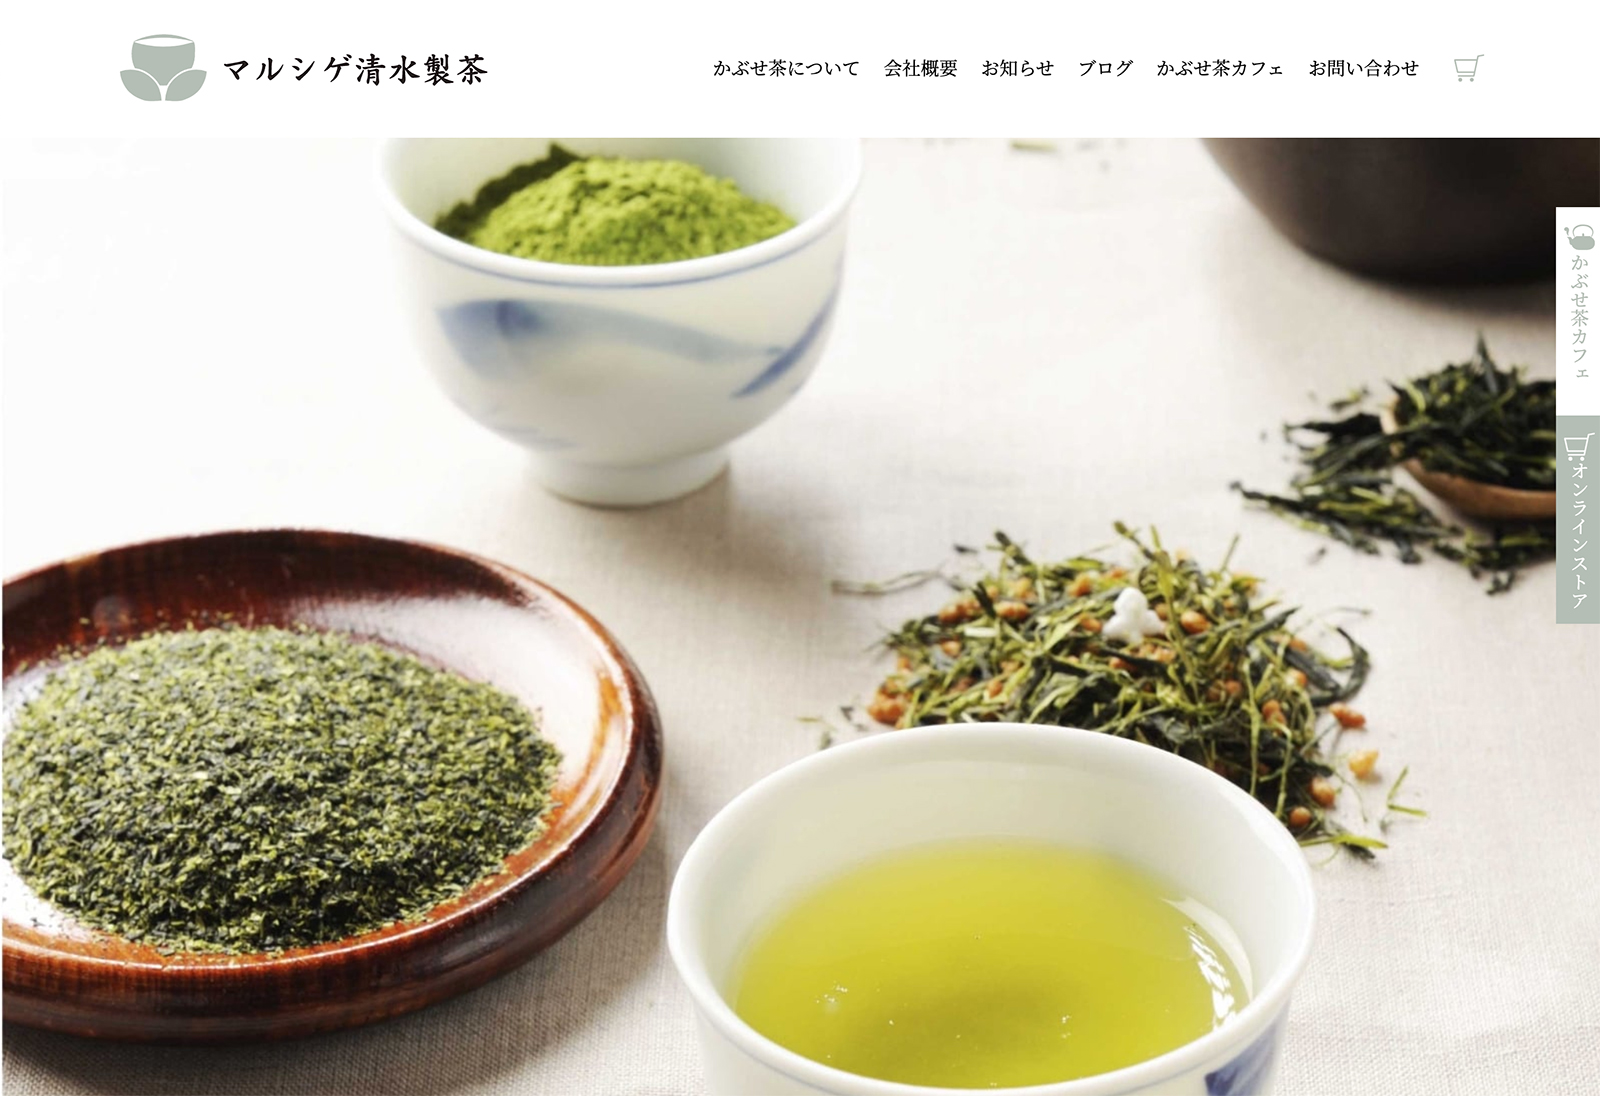 マルシゲ清水製茶ホームページ